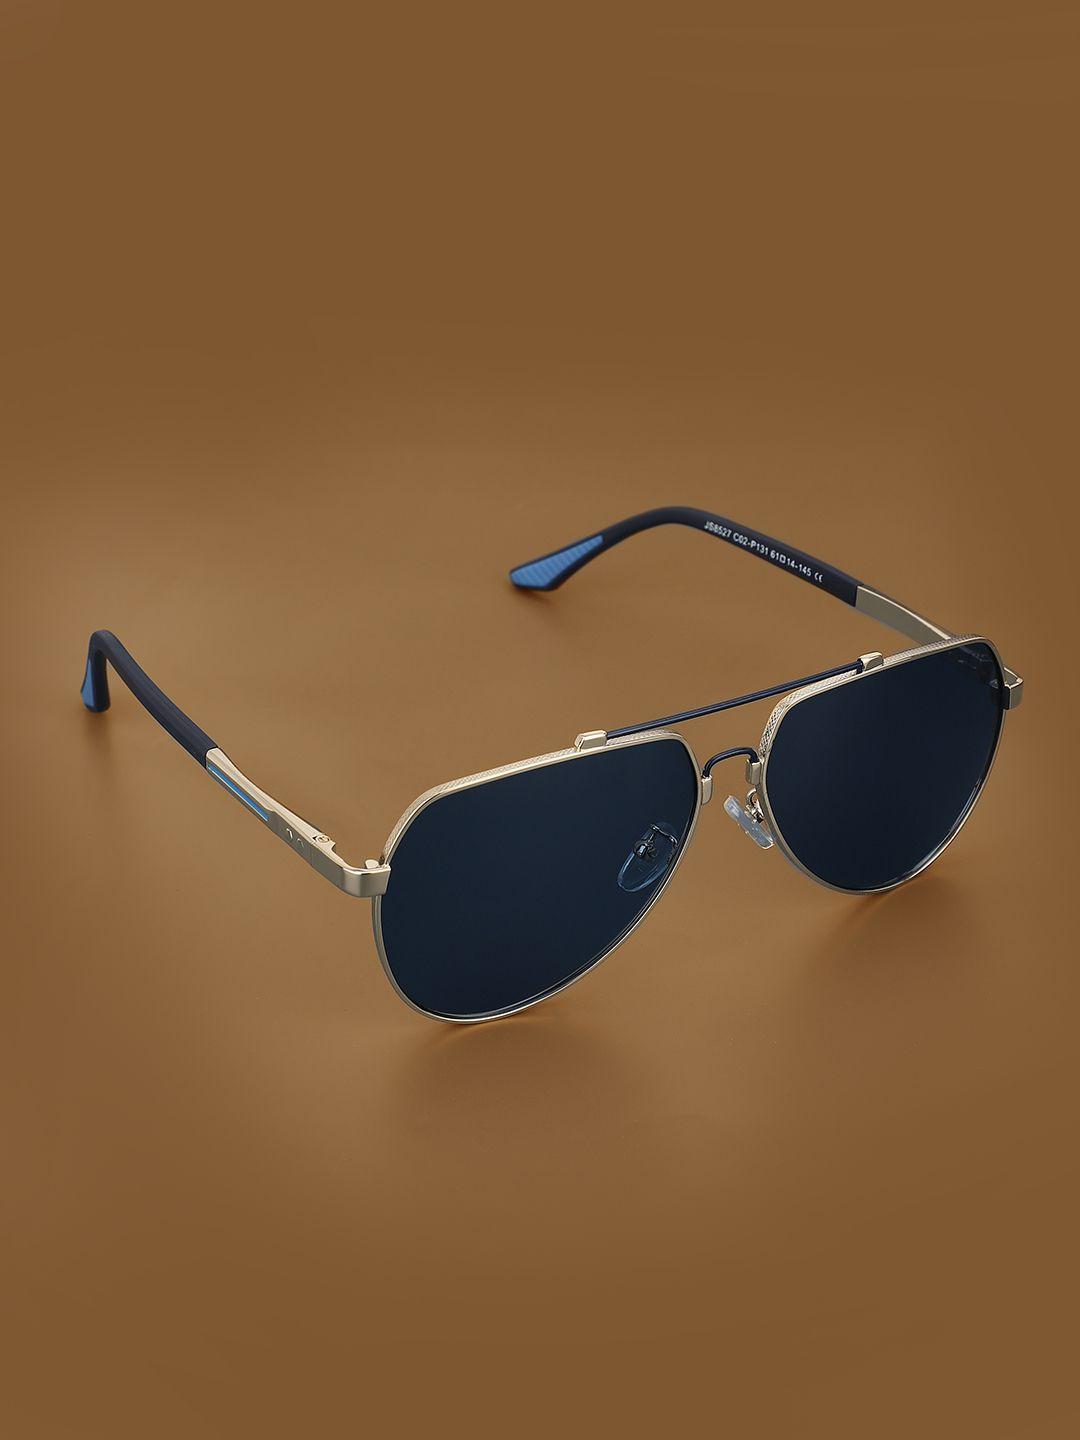 carlton-london-premium-men-aviator-sunglasses-with-polarised-uv-protected-lens-clsm129